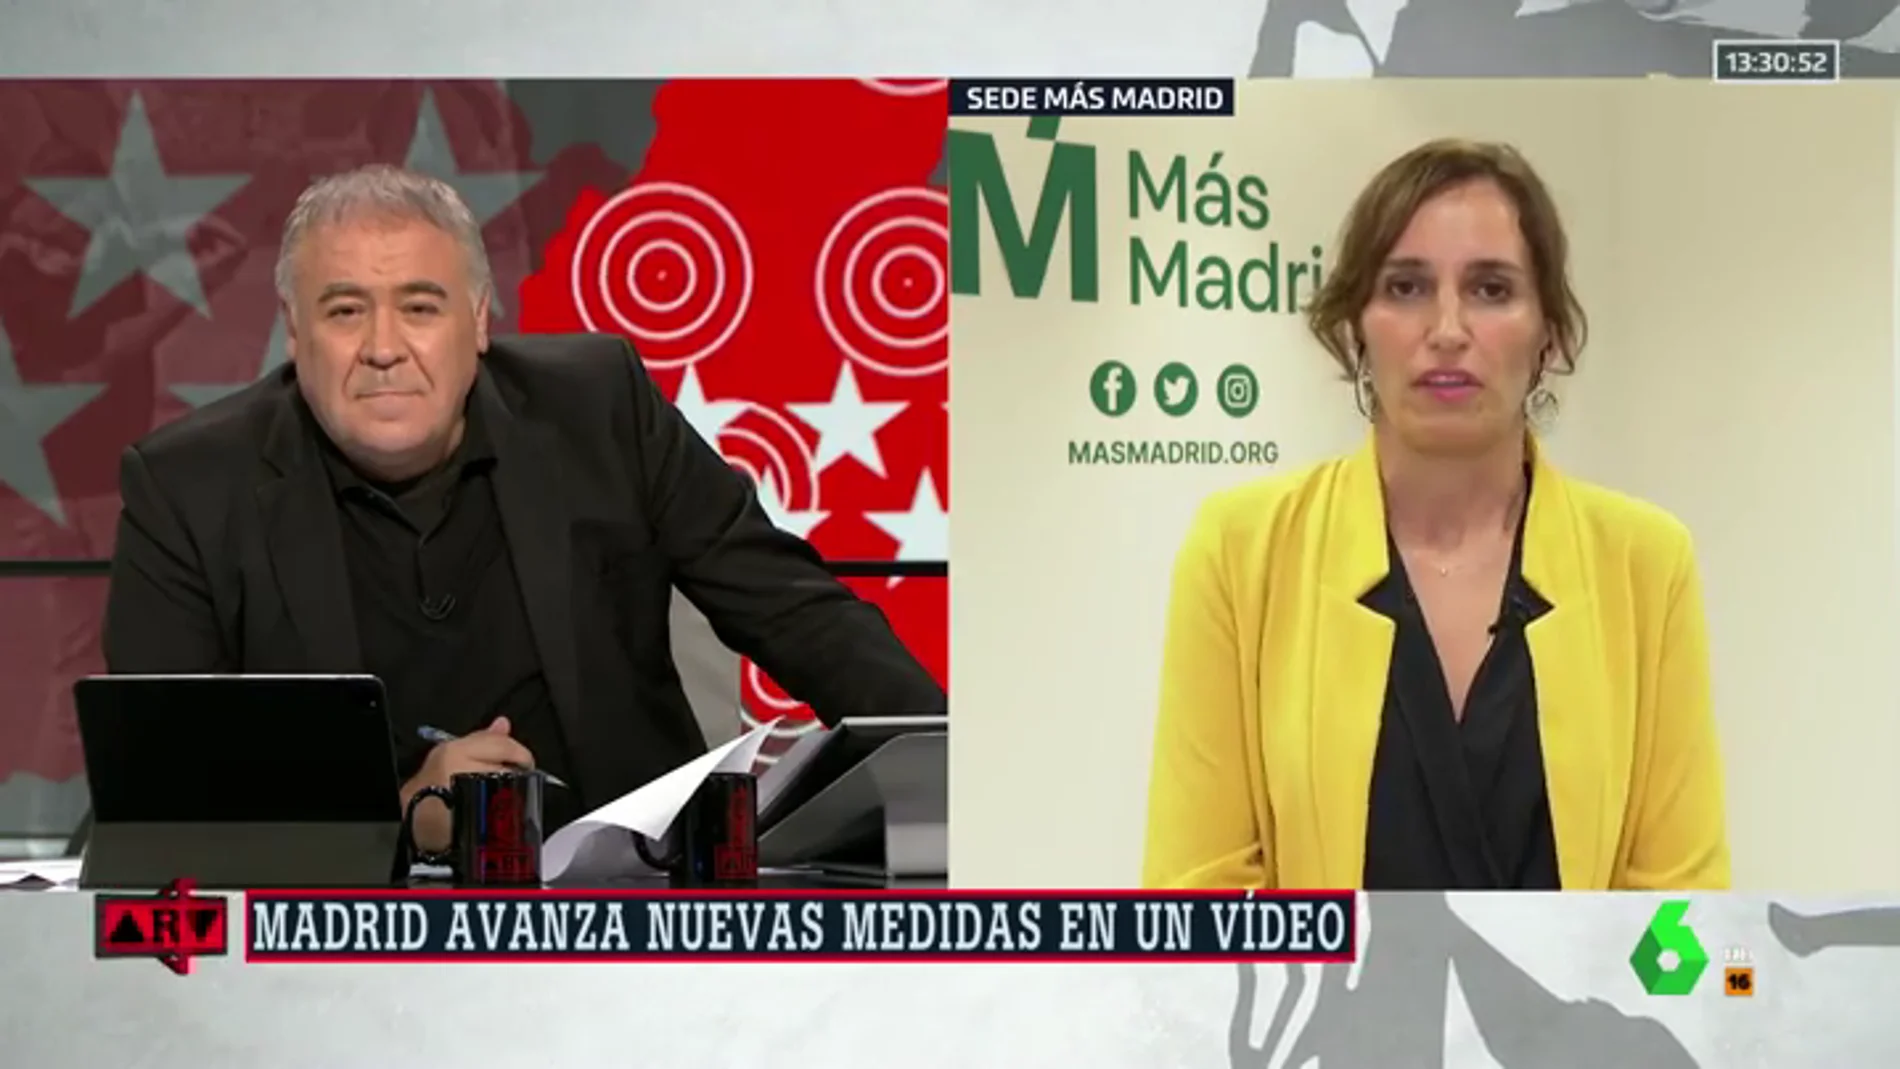 Mónica García (Más Madrid), sobre el anuncio de medidas: "No hay nadie al volante y no se puede gestionar a golpe de ocurrencia"